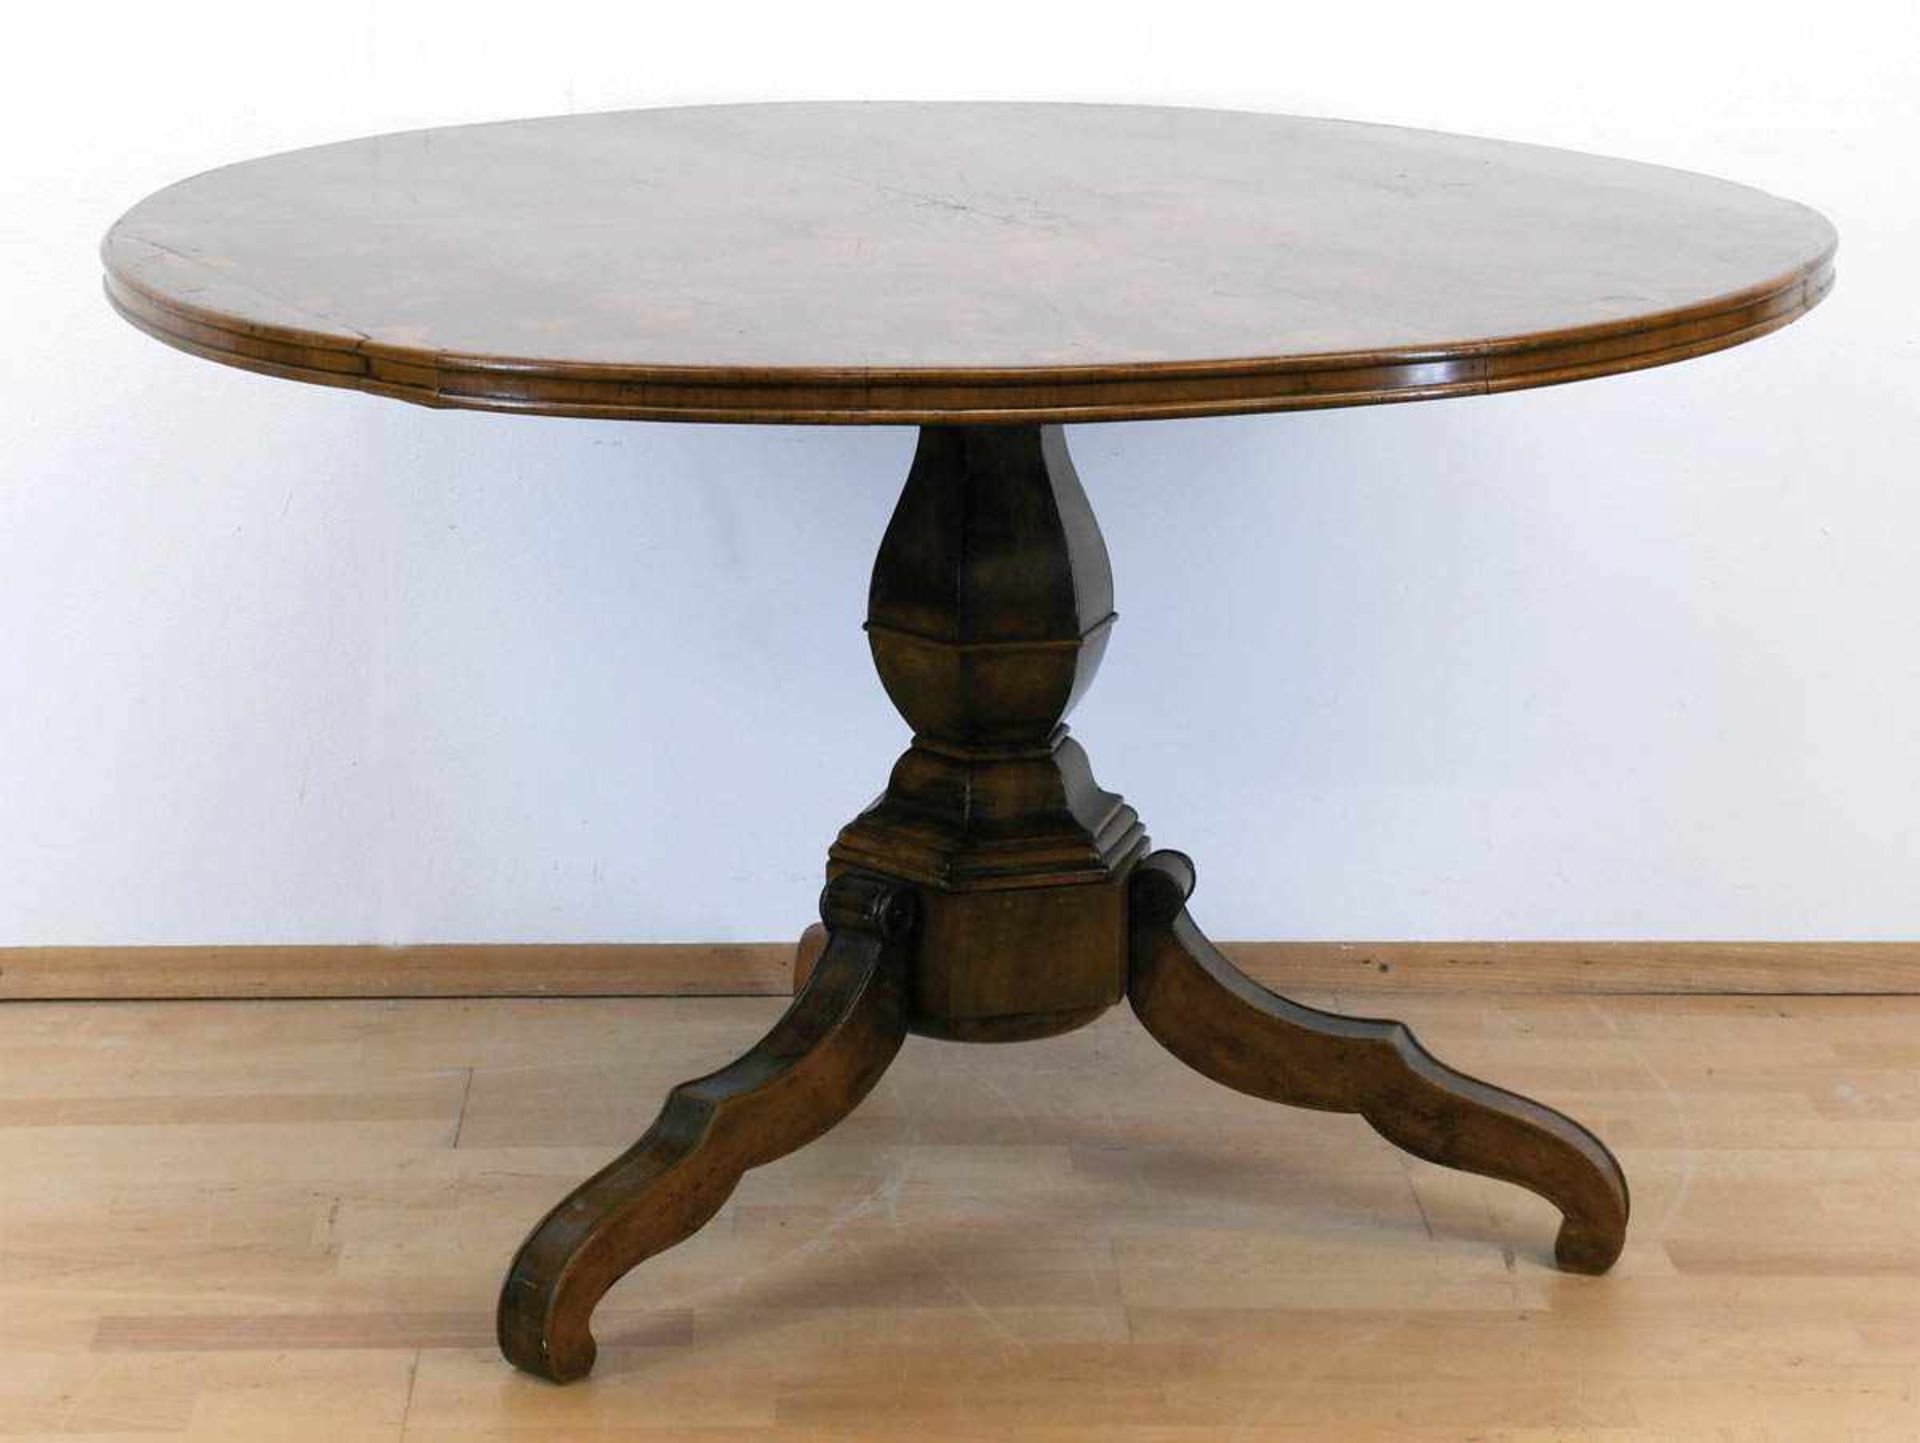 Biedermeier-Tisch, Nußbaum furniert, 6-kantige Balustersäulen auf 3 geschwungenen Füßen,runde